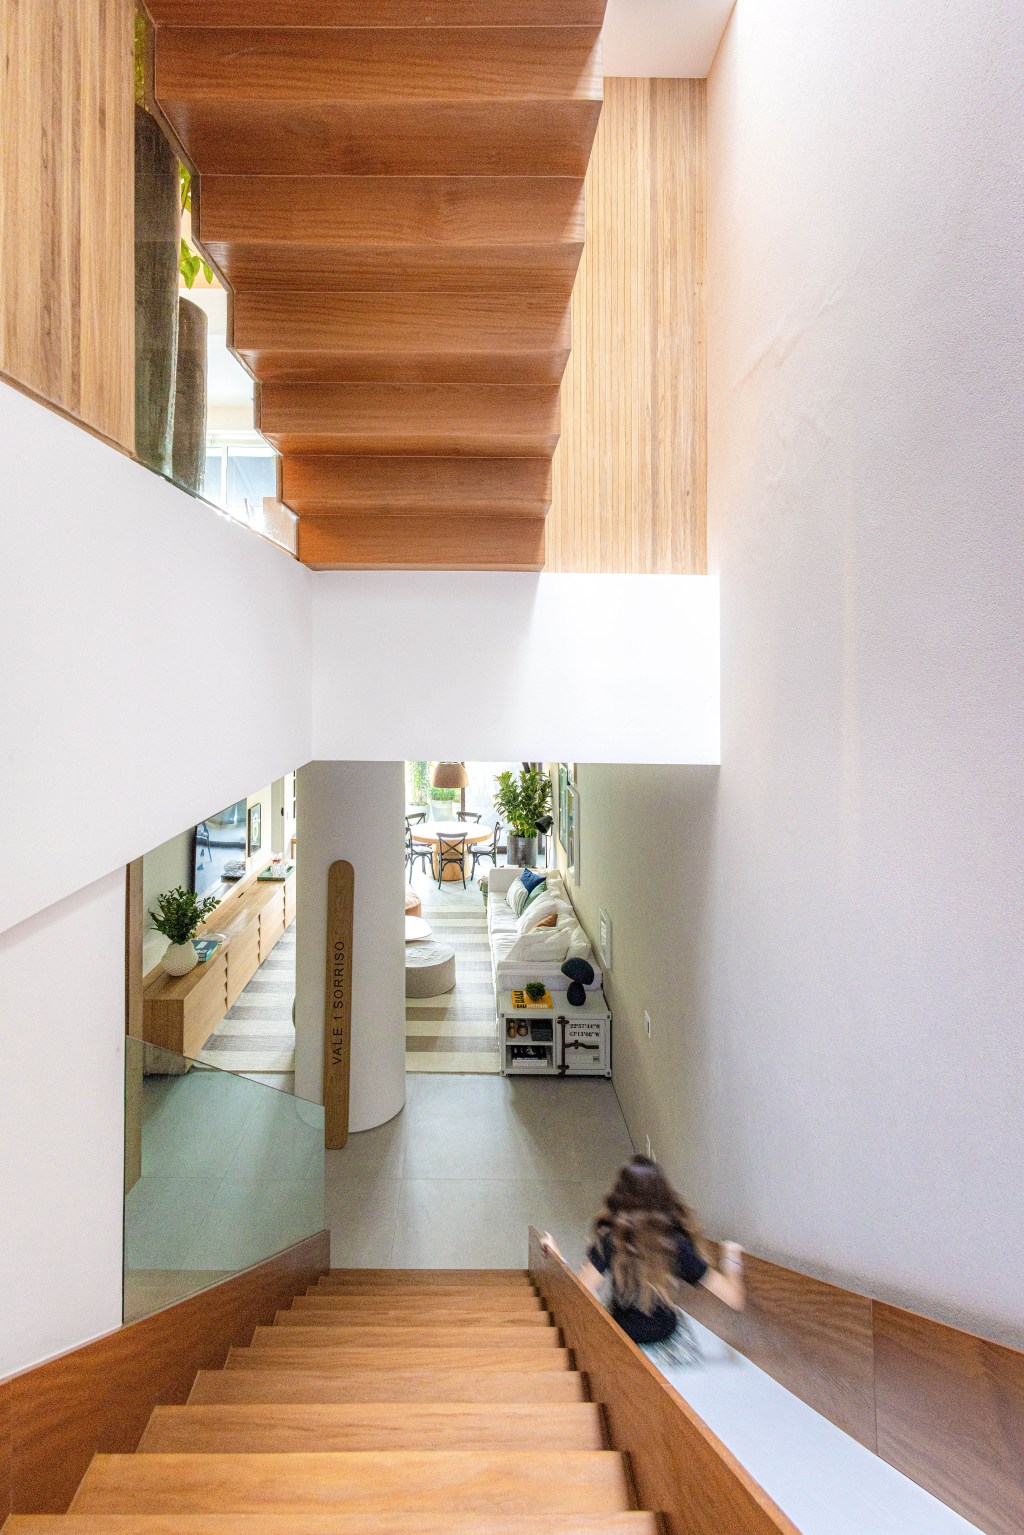 Casa no Rio de Janeiro ganha andar de lazer de 160 m² no subsolo. Projeto de Escala Arquitetura. Na foto, escada com escorregador para o subsolo.